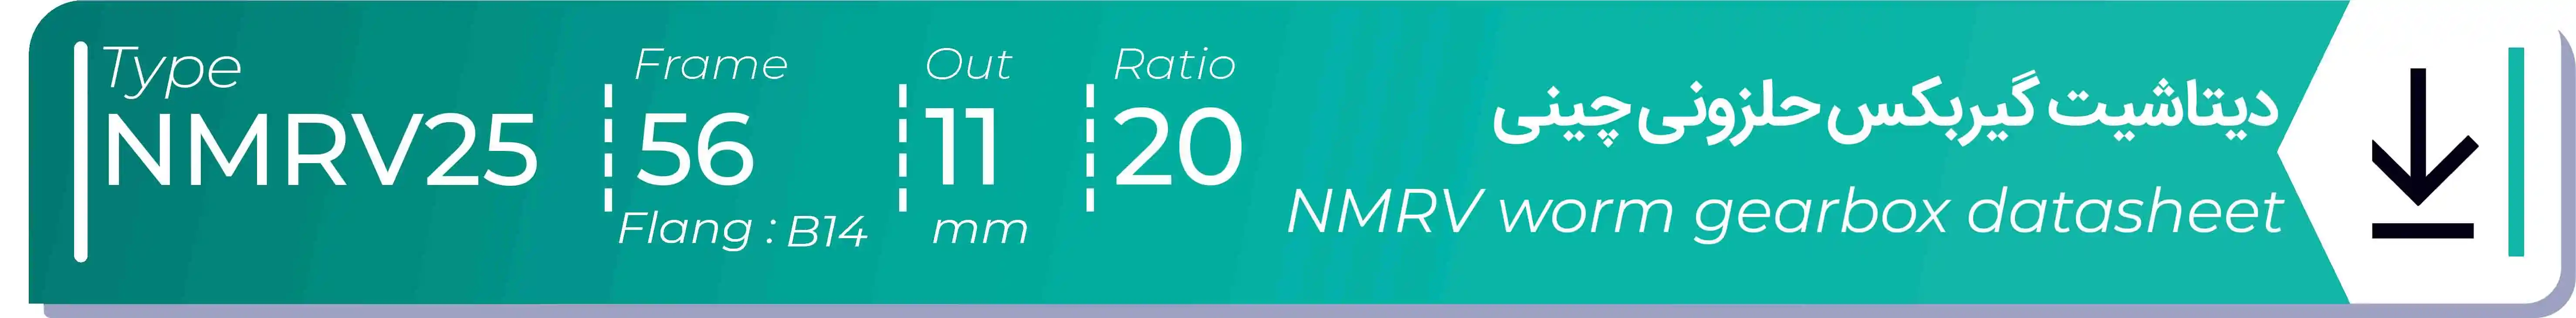  دیتاشیت و مشخصات فنی گیربکس حلزونی چینی   NMRV25  -  با خروجی 11- میلی متر و نسبت20